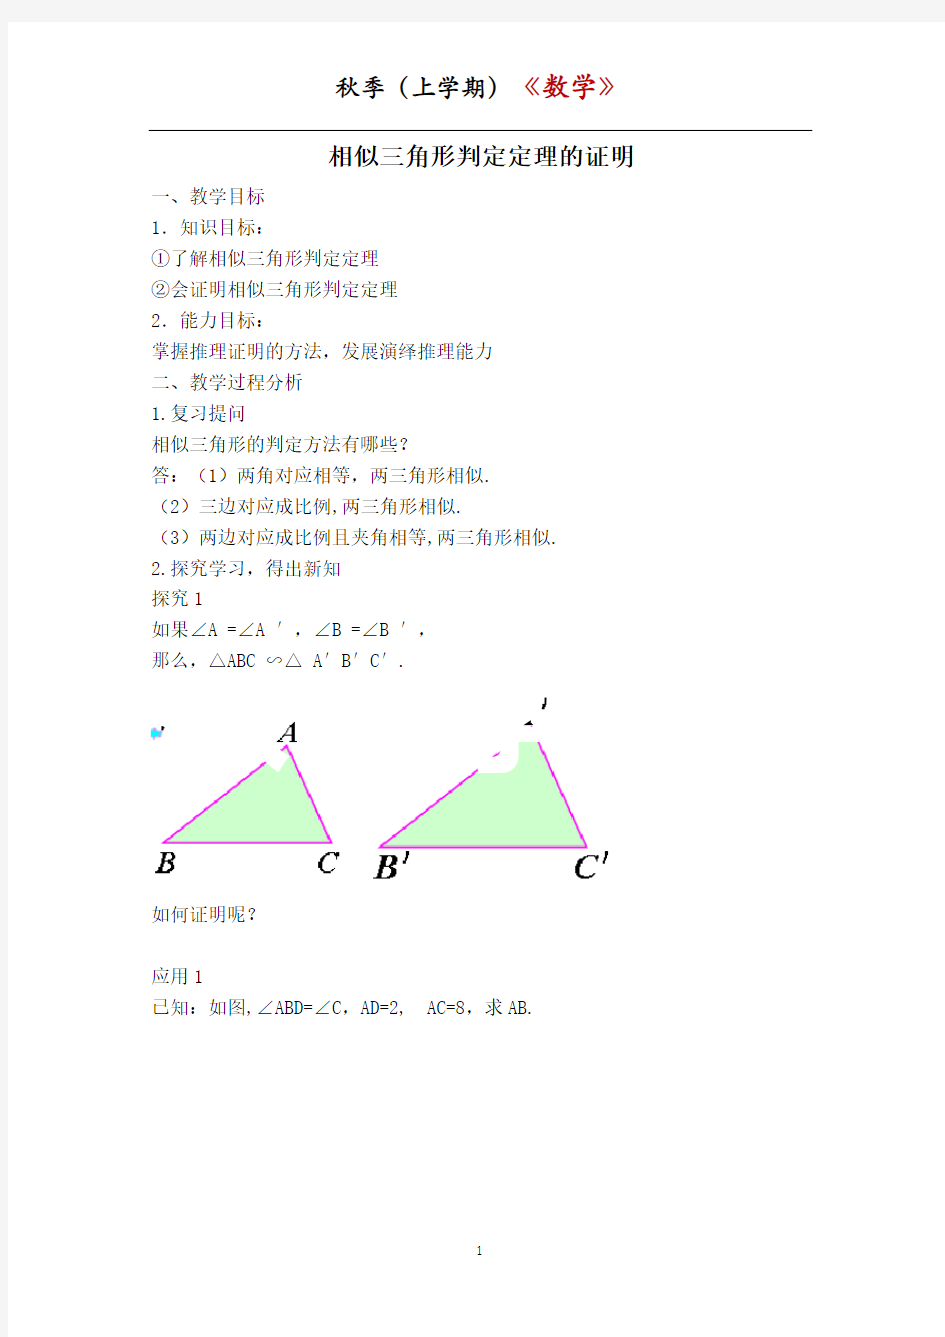 【教案】相似三角形判定定理的证明